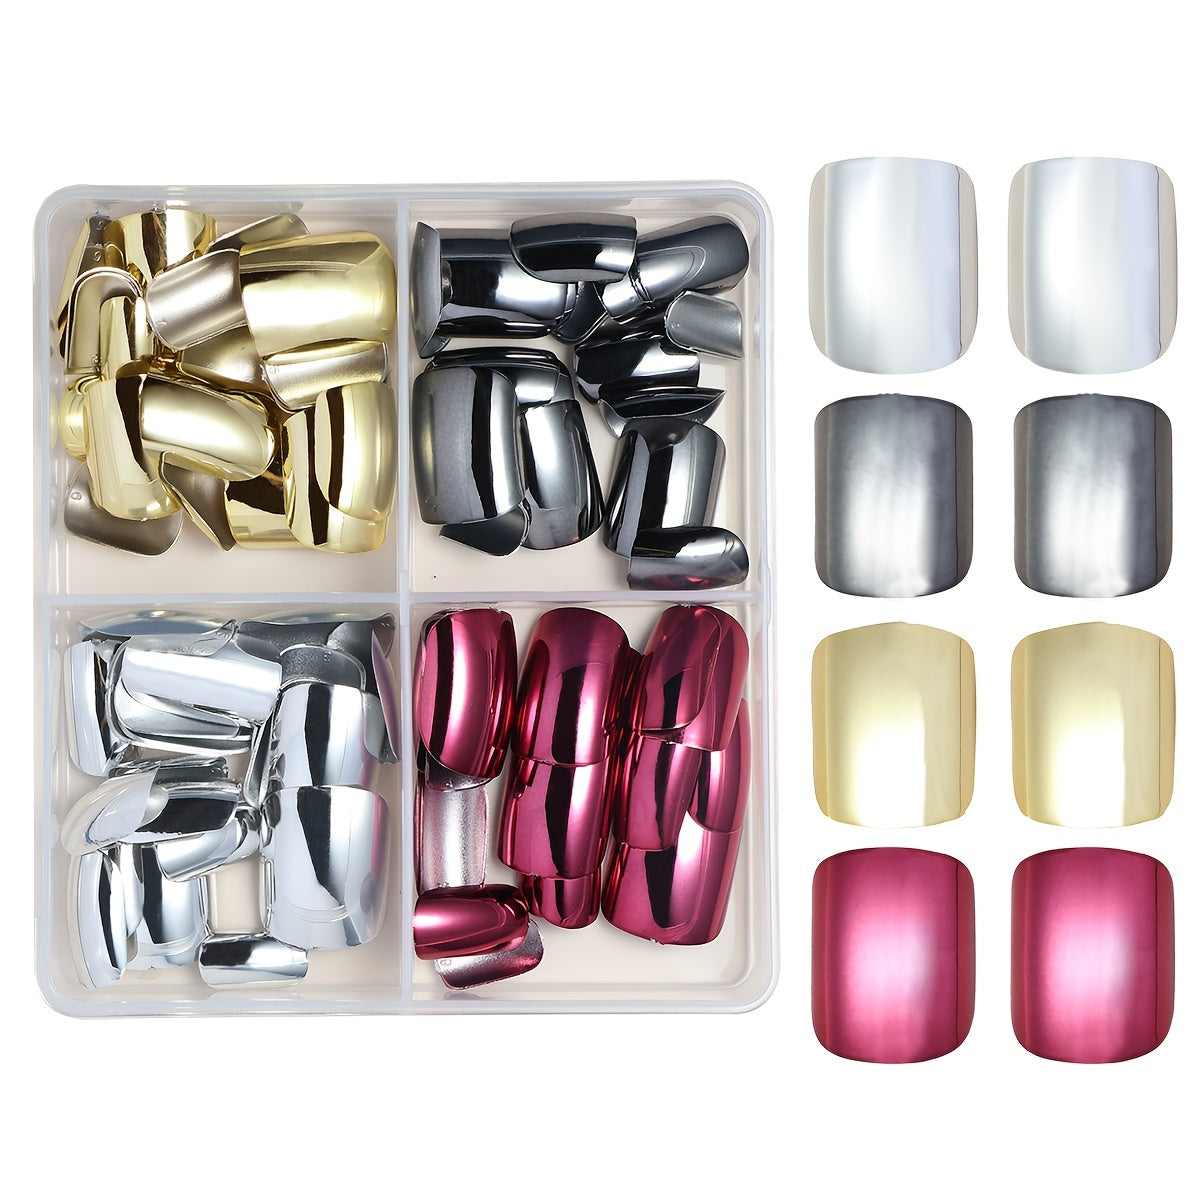 96 Pcs Short Square Mirror Chrome Press-On Nails Set - 4 Colors, Mini Files & Jelly Tabs